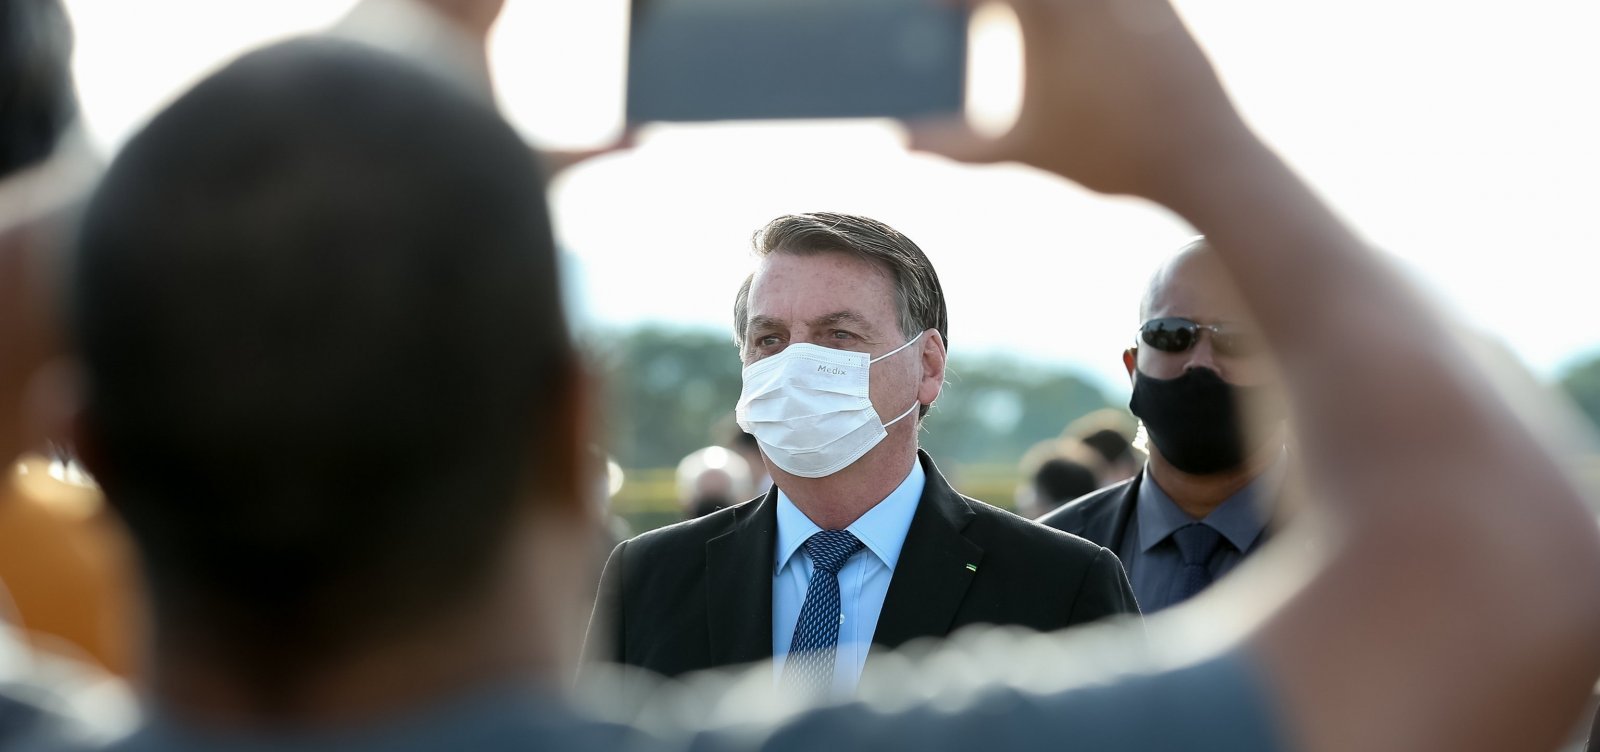 Com país em colapso, Bolsonaro critica isolamento: 'Chega de mimimi'